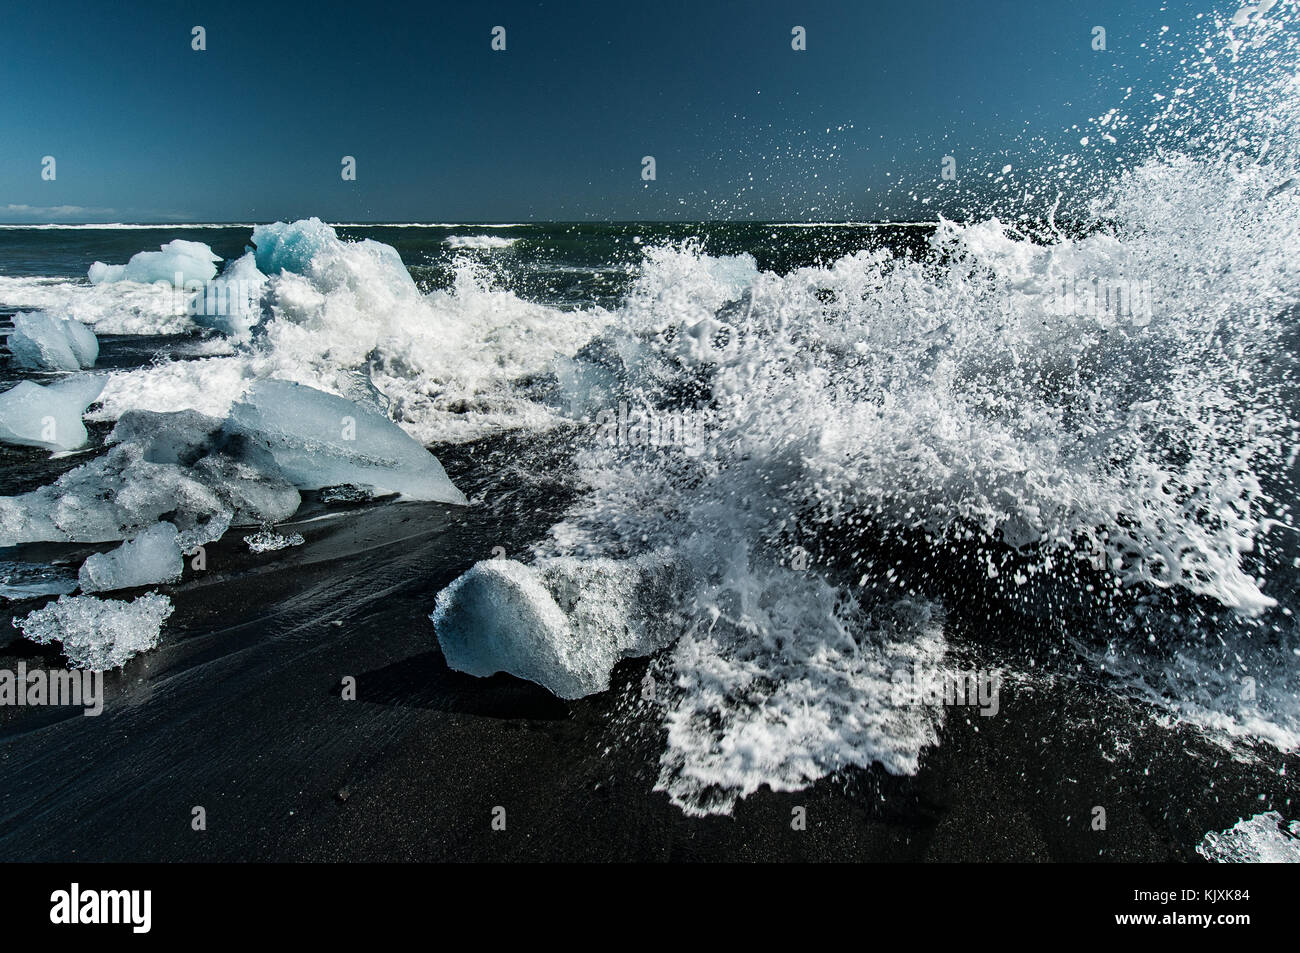 Les vagues de l'océan, jouer avec les blocs de glace rejetée sur la plage volcanique noire près de l'Islande Jökulsárlón Banque D'Images